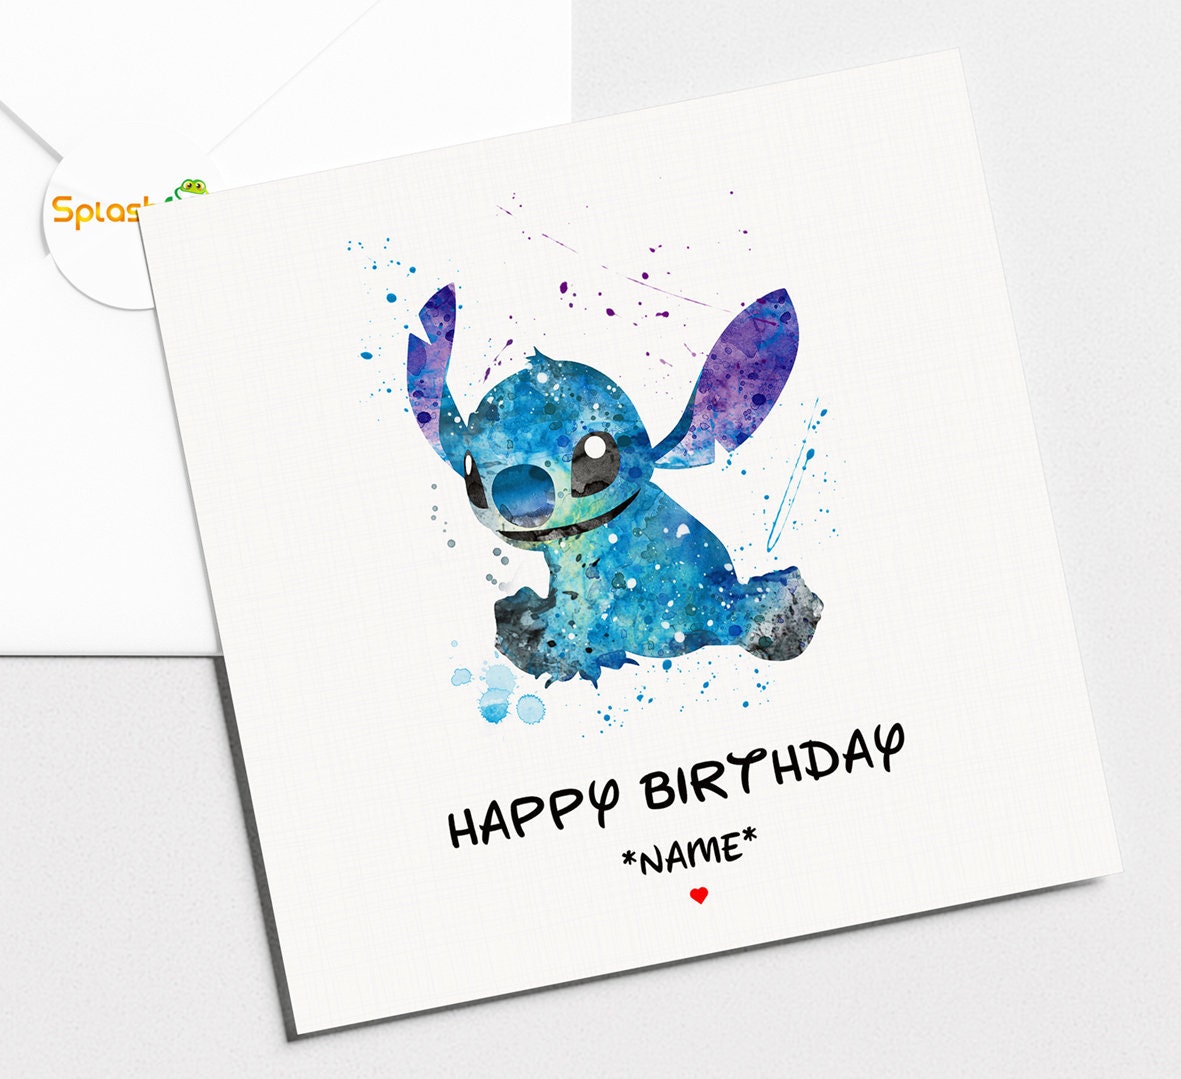 Decoraciones de cumpleaños de Lilo Stitch, pancarta personalizada con  nombre y año, Photostudio, juguetes para niños